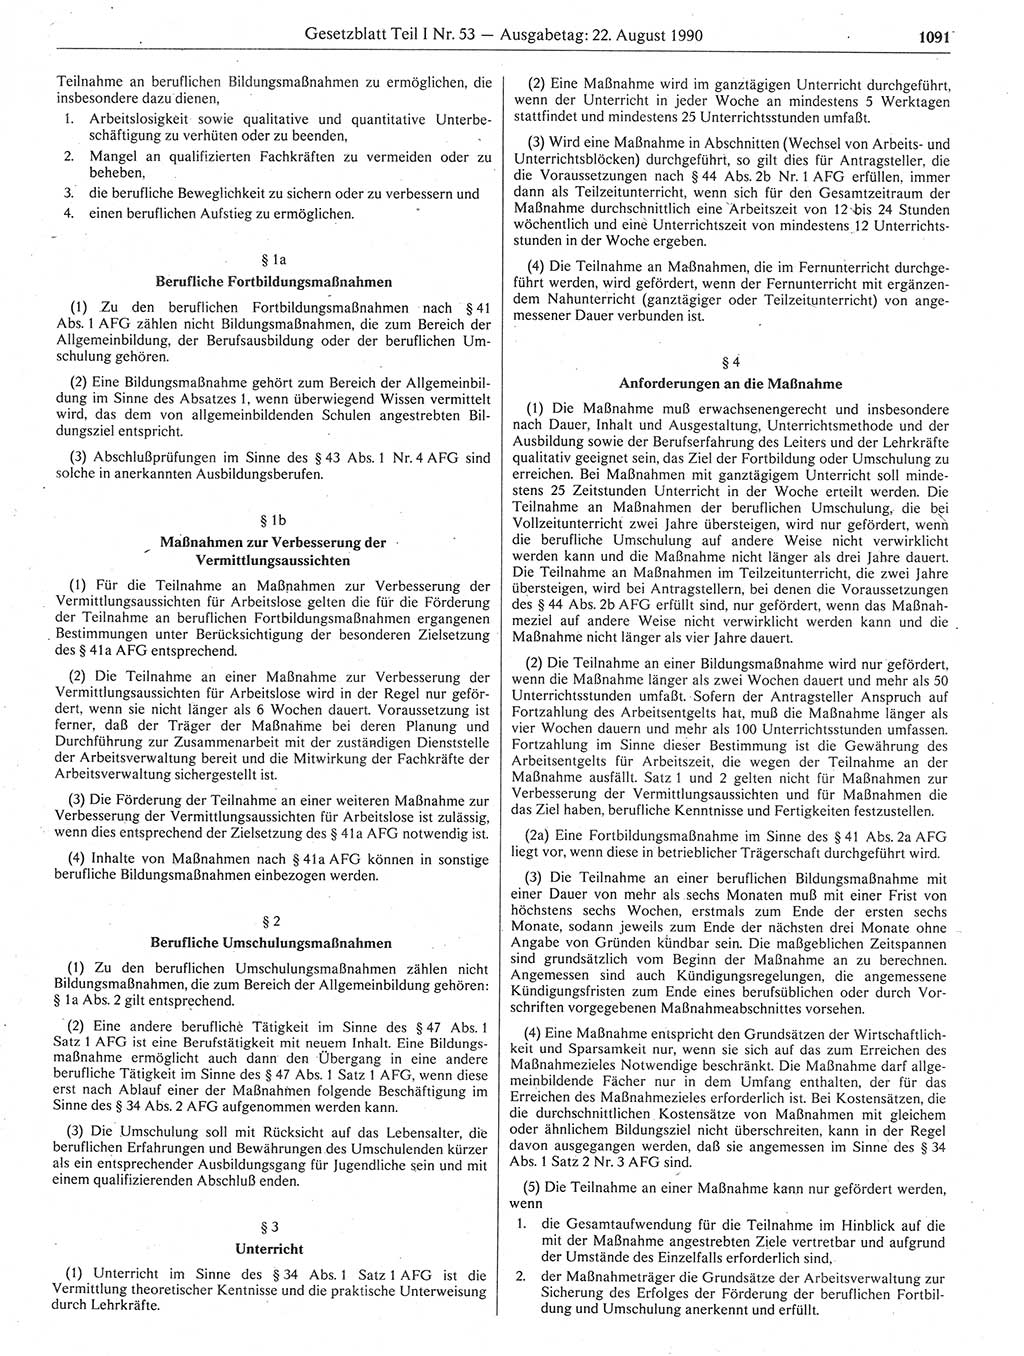 Gesetzblatt (GBl.) der Deutschen Demokratischen Republik (DDR) Teil Ⅰ 1990, Seite 1091 (GBl. DDR Ⅰ 1990, S. 1091)